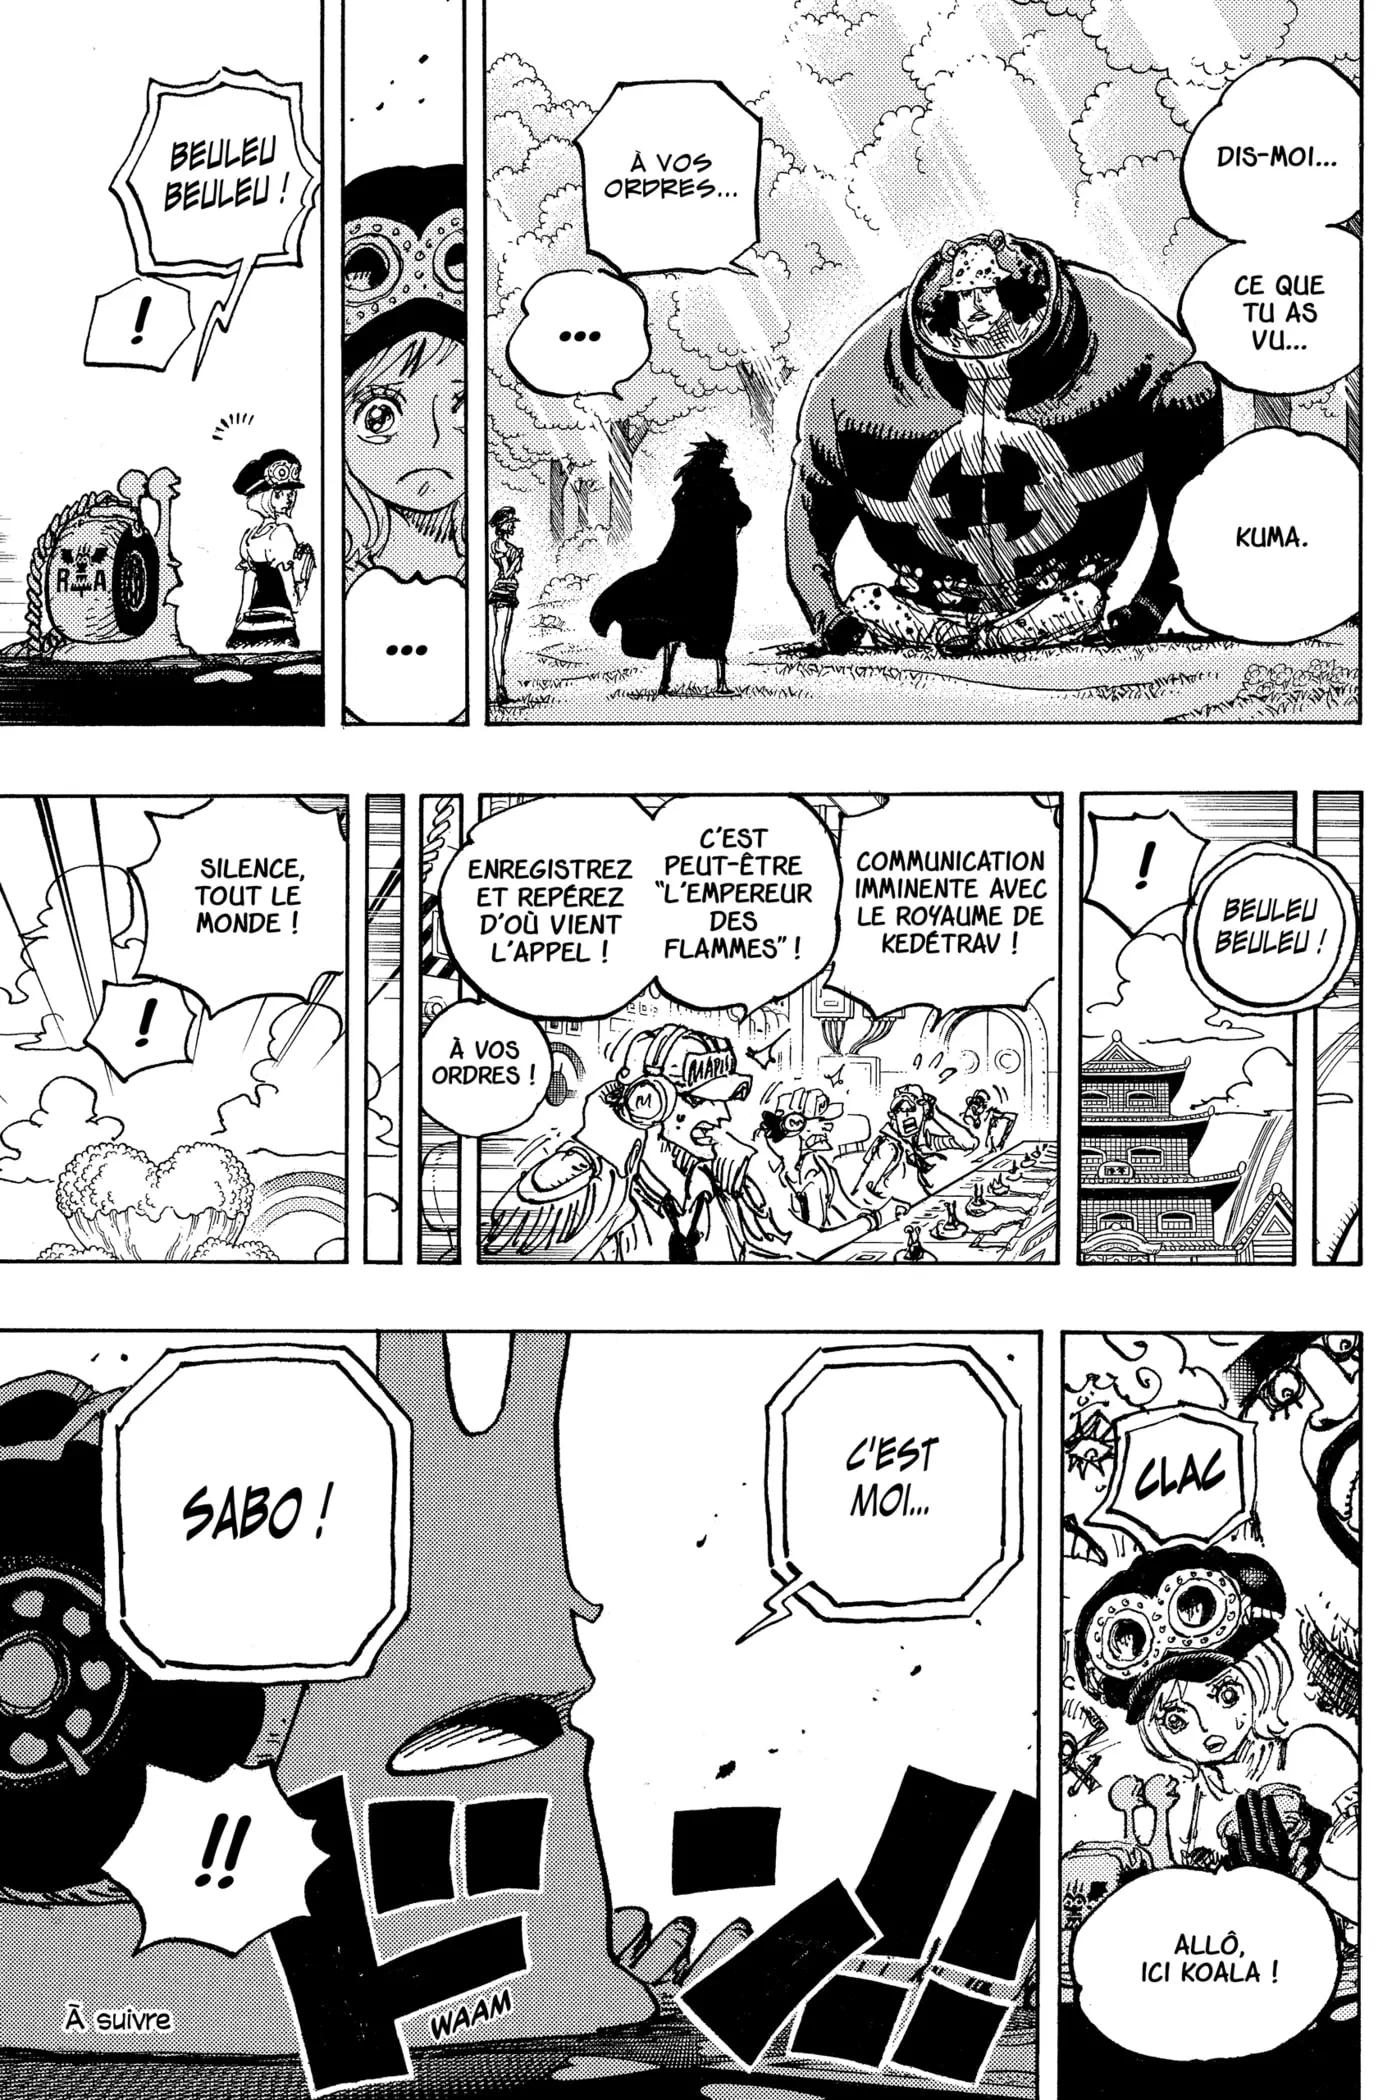 Les Spoilers One Piece Chapitre 1060 : Lulusia est détruite, Sabo meurt ? 4 17